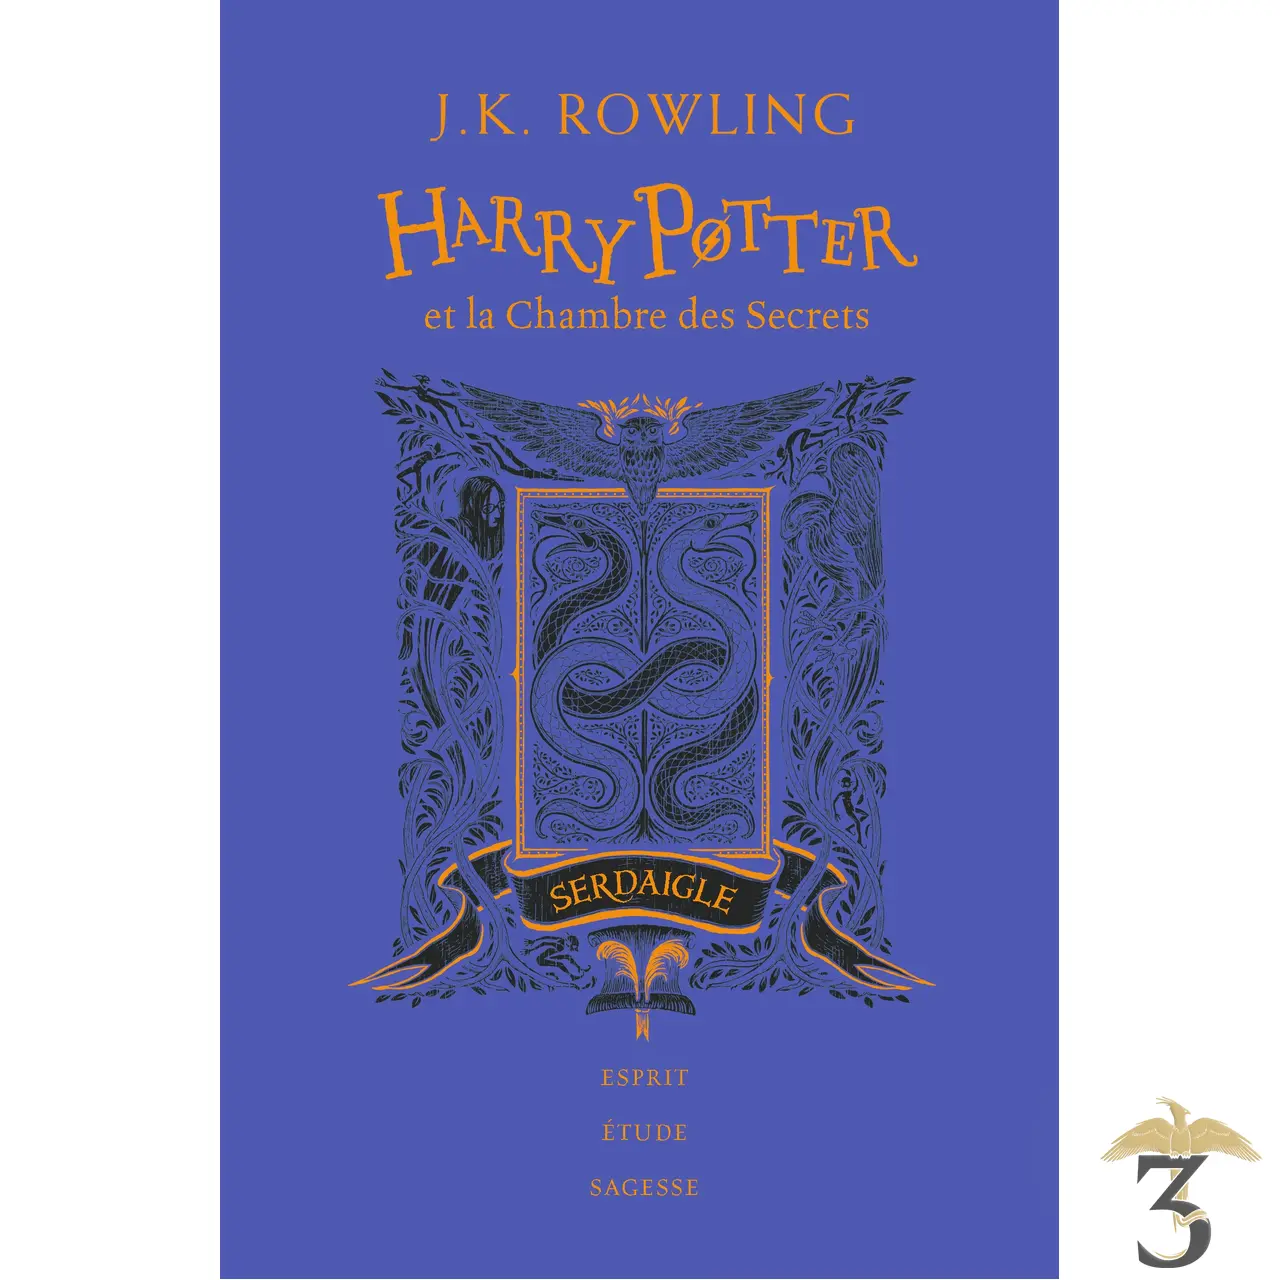 Edition Serdaigle 20 ans Harry Potter et la Chambre des Secrets